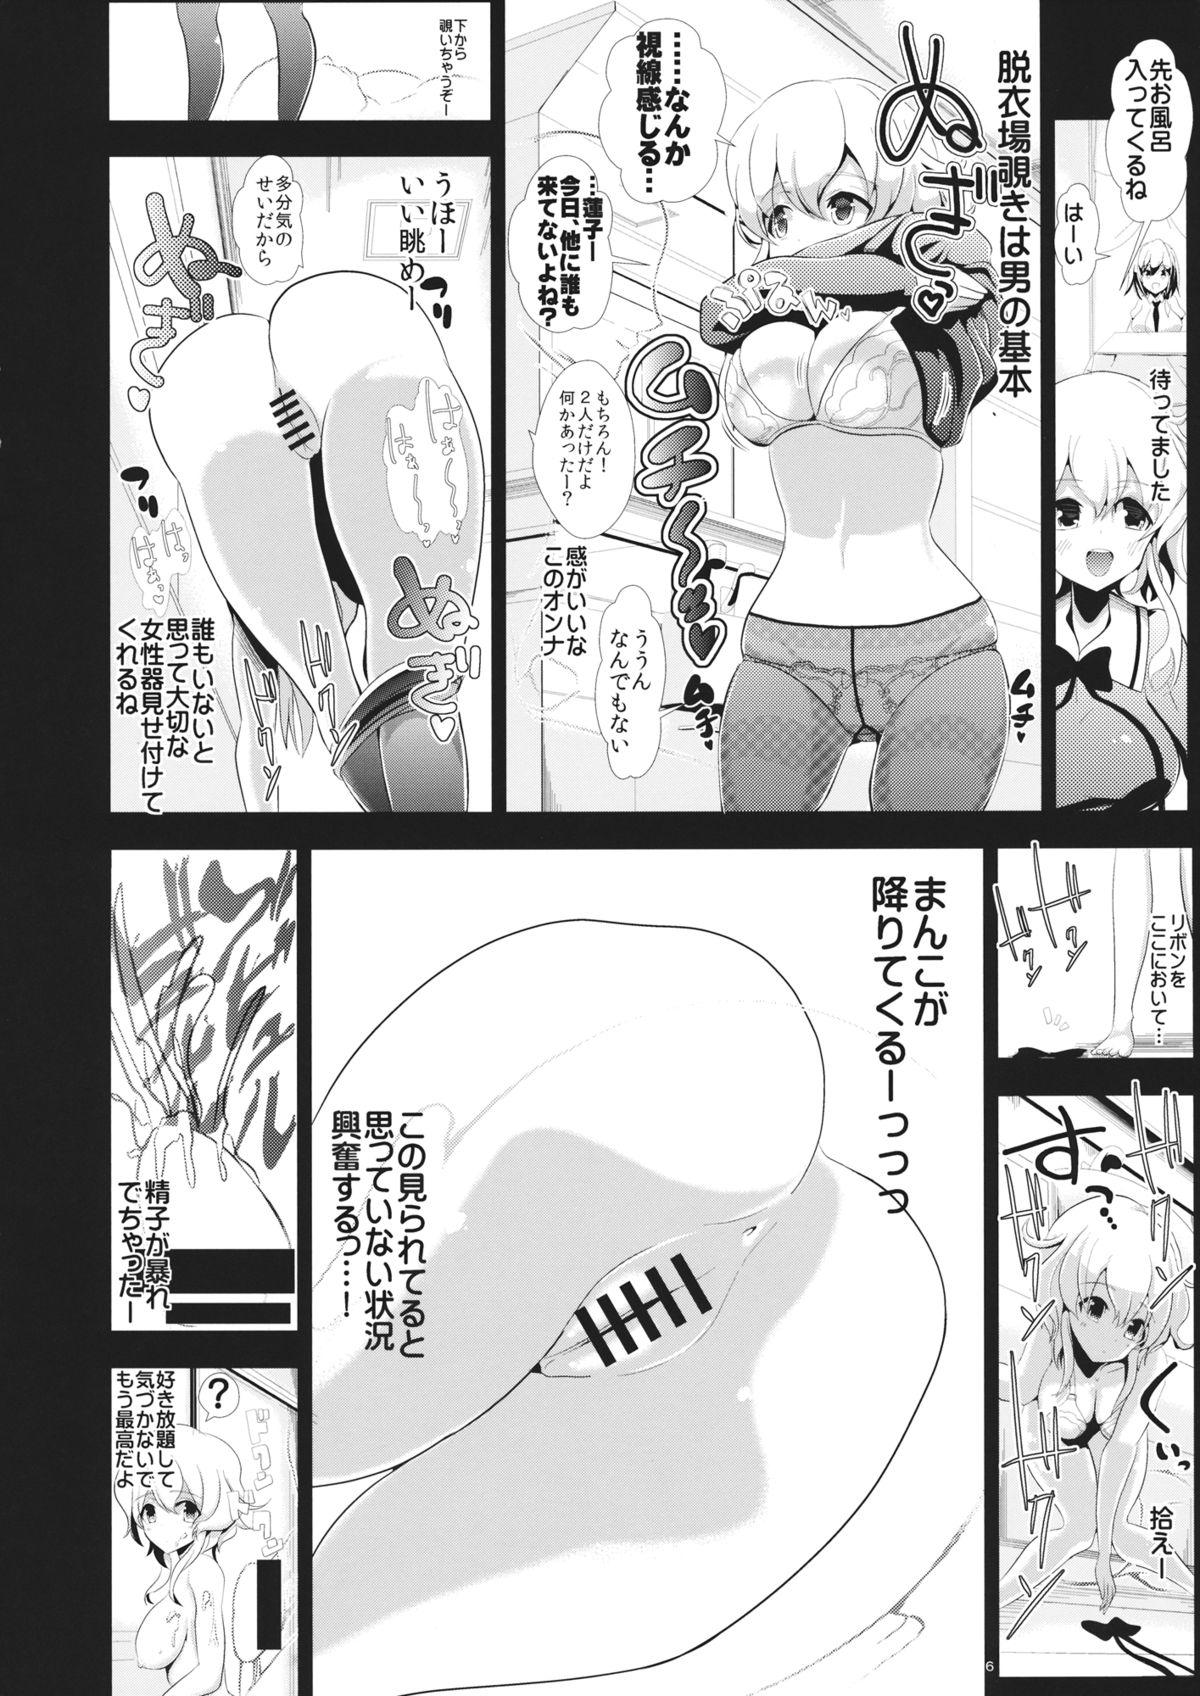 Rimjob Touhou Toumei Ningen 2 Shinnyuu Renko n Chi - Touhou project Muscles - Page 7